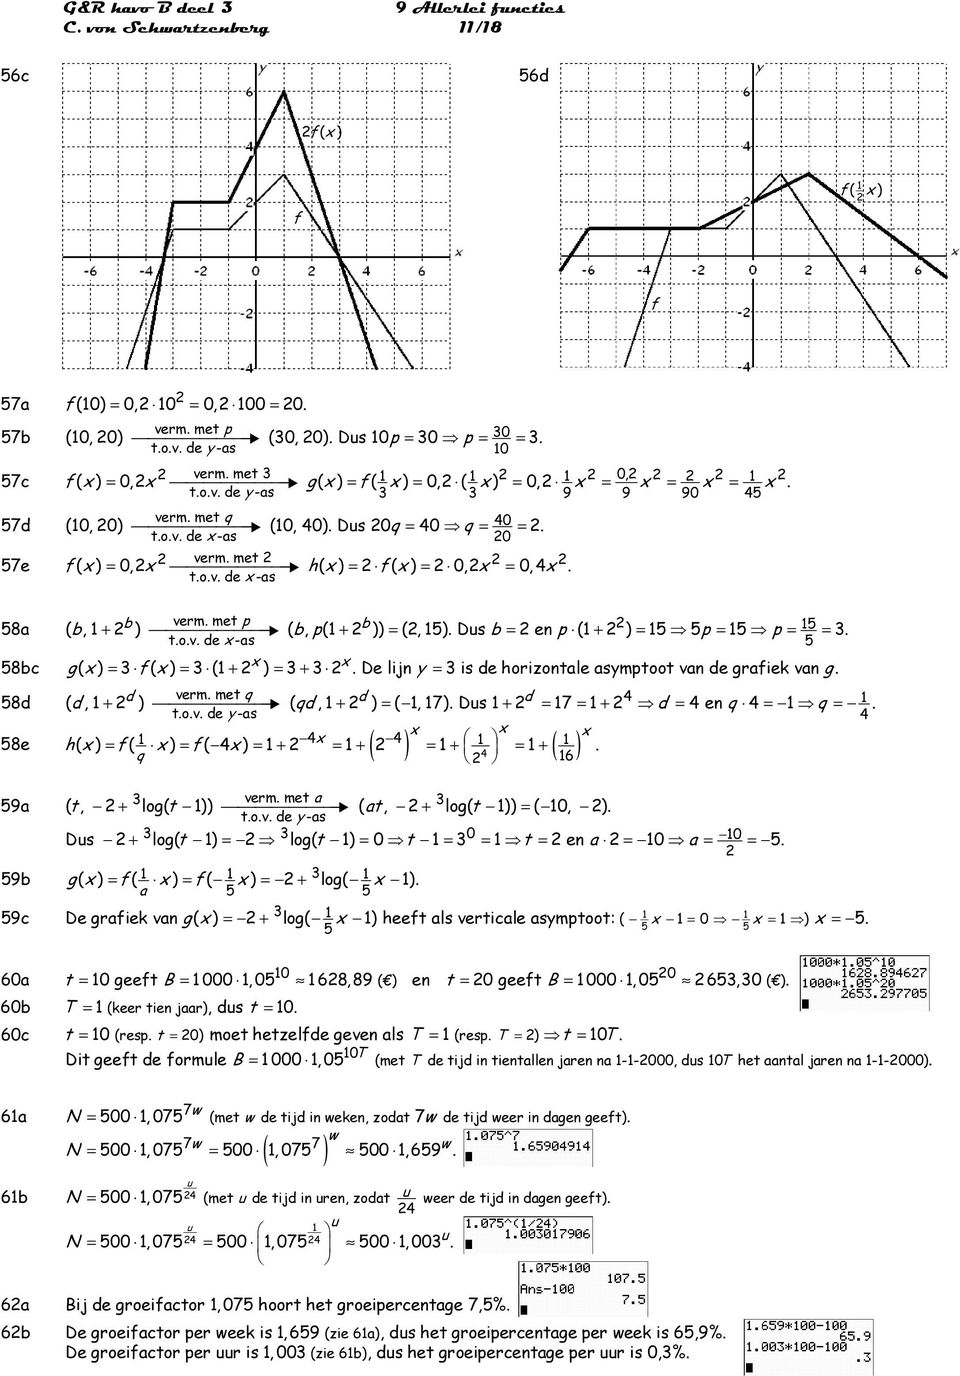 5 5 b p + = b = p + = p = p = = ov de -as 5 58bc ( ) = ( ) = ( + ) = + De lijn = is de horizonale asmpoo van de raiek van d verm me q d d 58d ( d, + ) (, + ) = (, 7) Dus + = 7 = + = en = = qd d q q